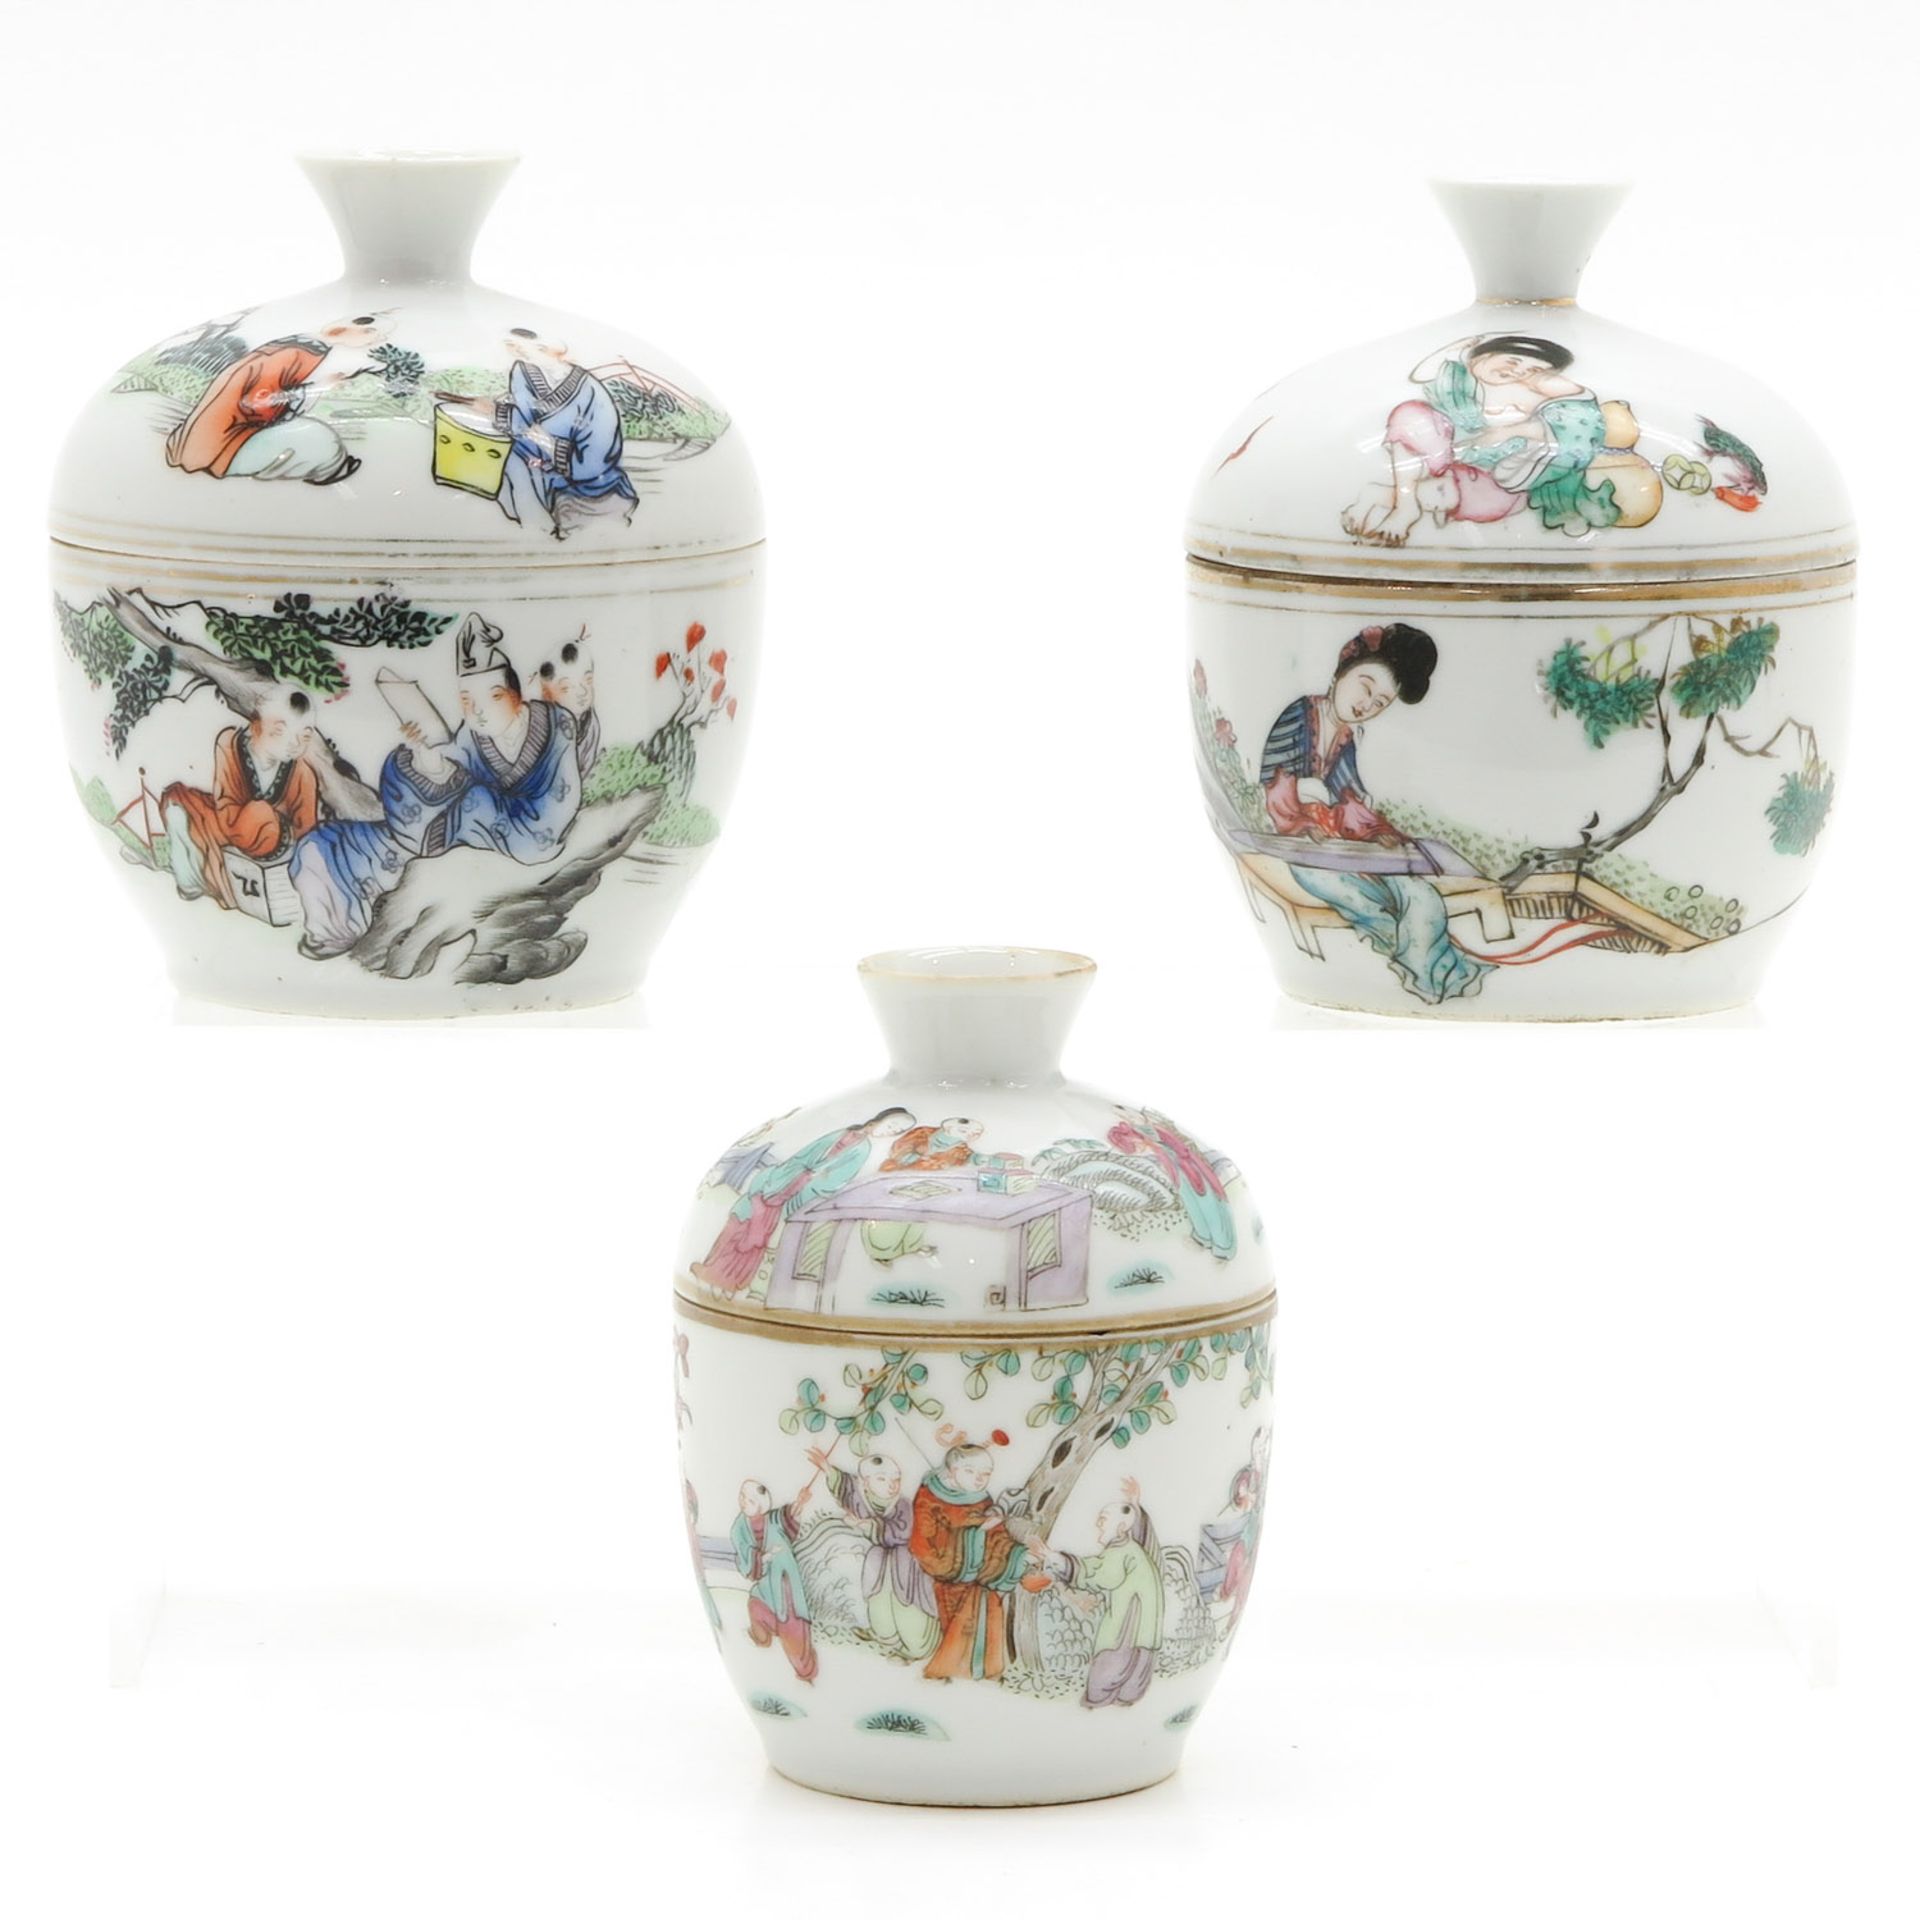 Lot of 3 China Porcelain Lidded Bowls